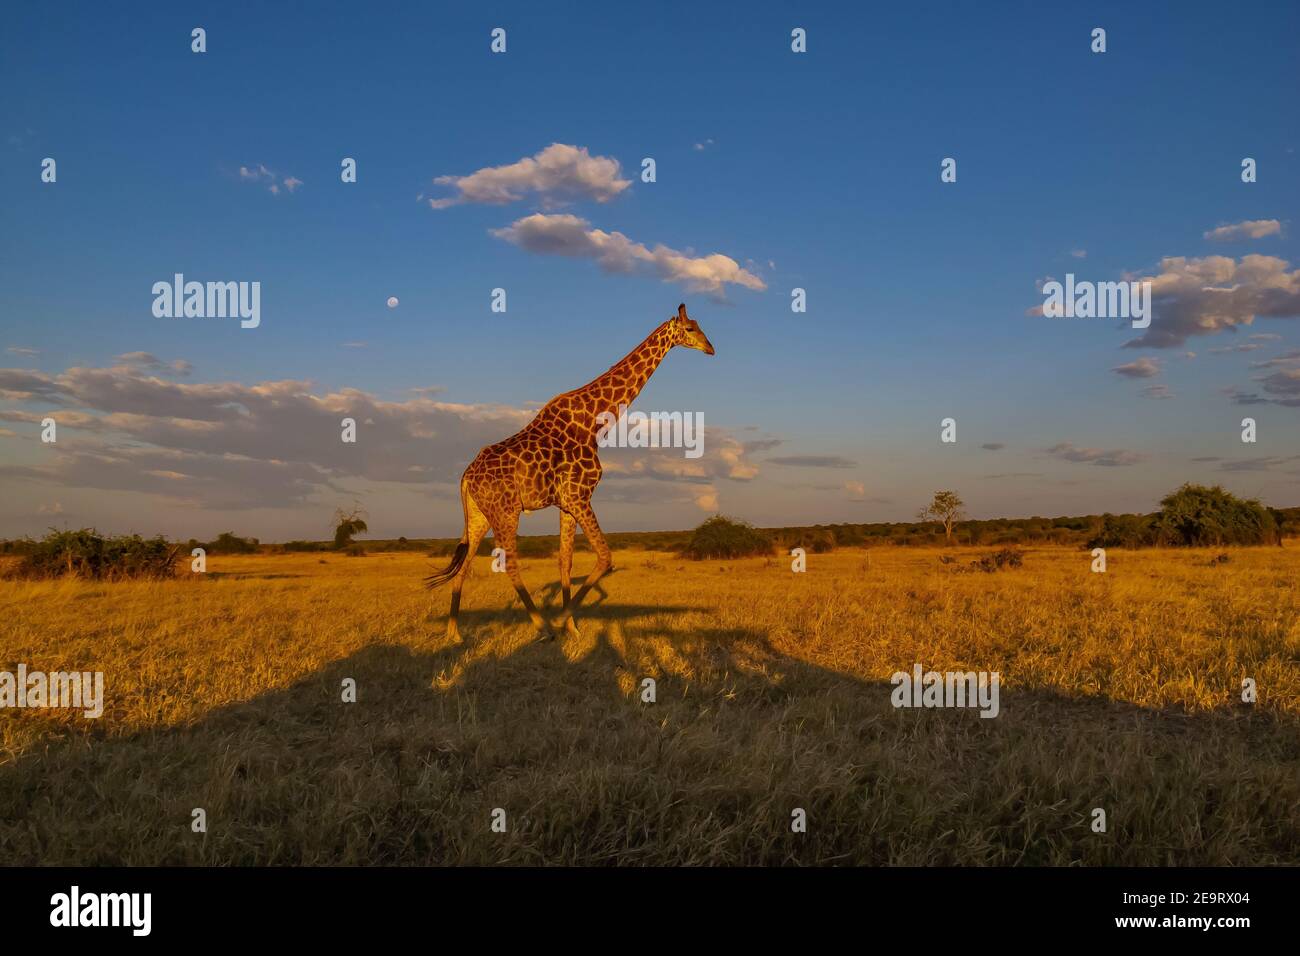 Giraffe in Chobe National Park of Botswana. Stock Photo